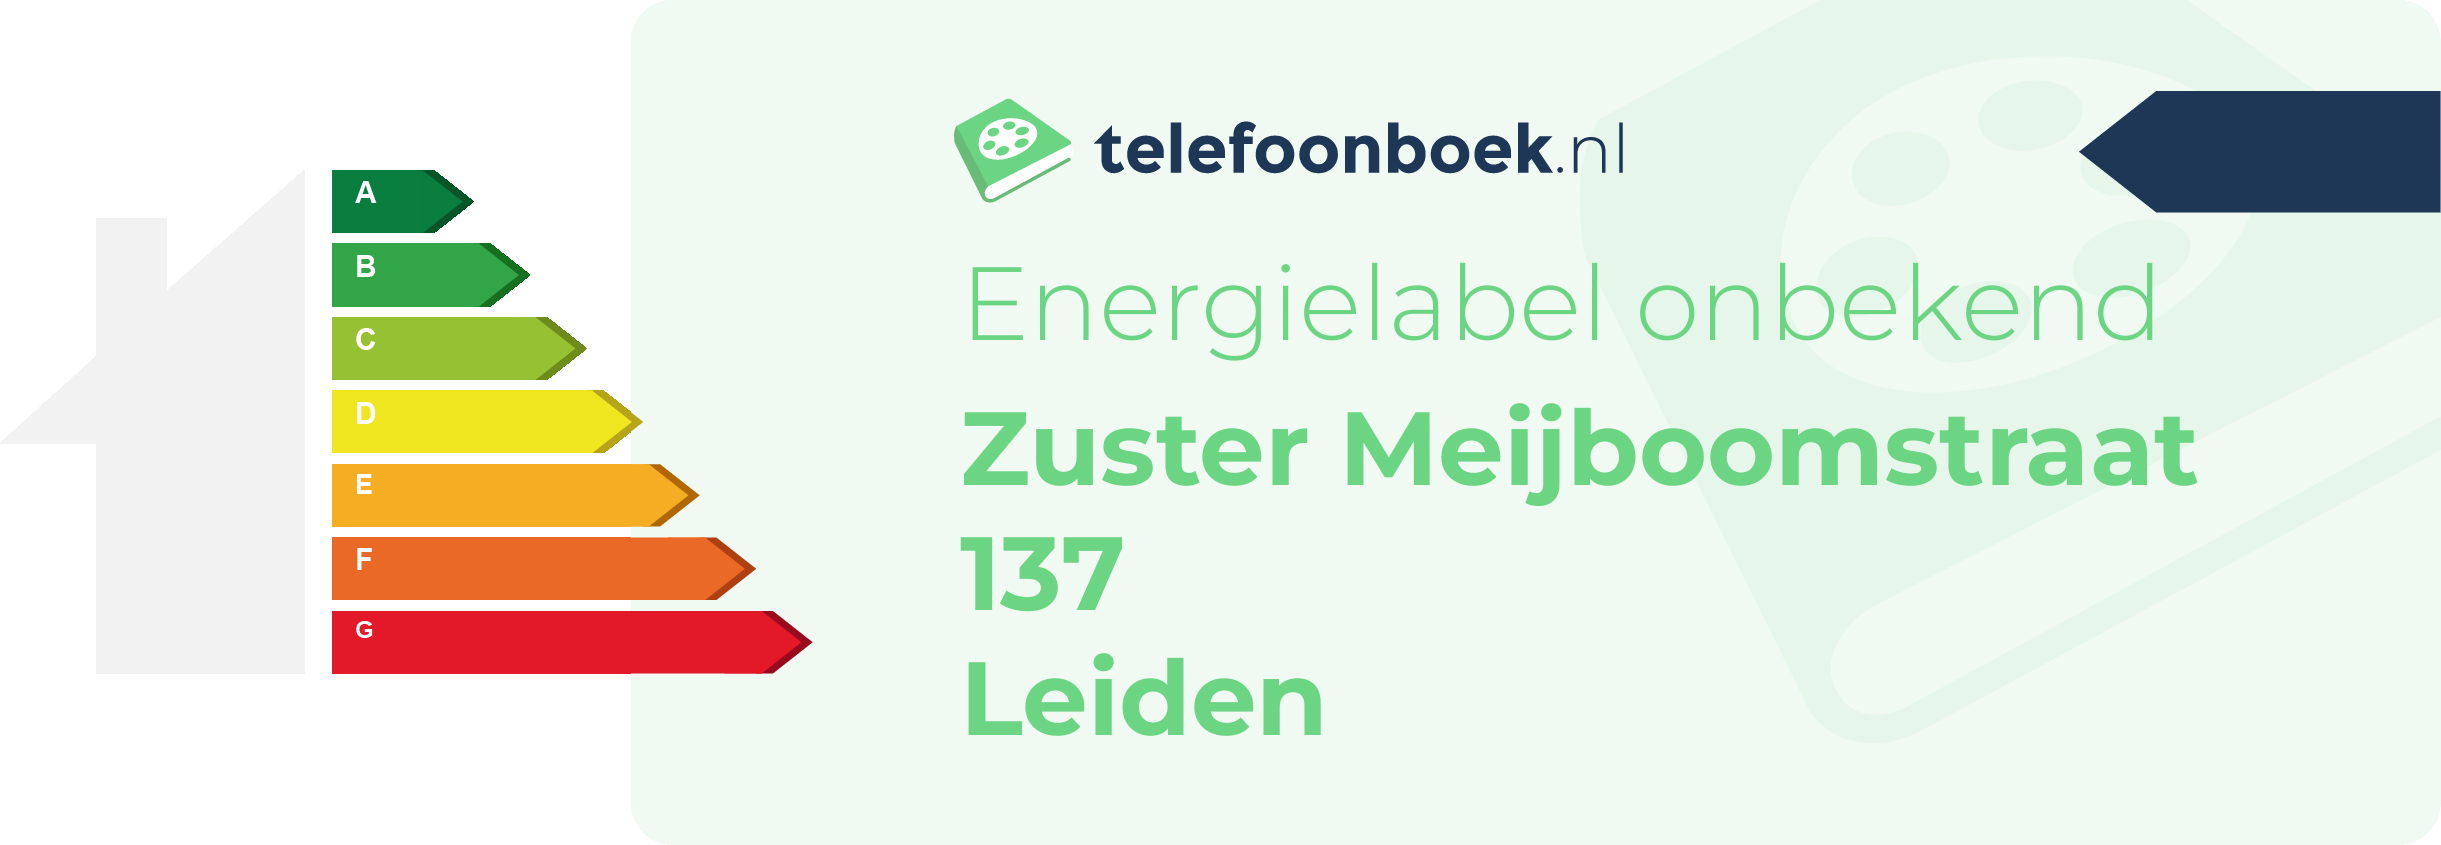 Energielabel Zuster Meijboomstraat 137 Leiden